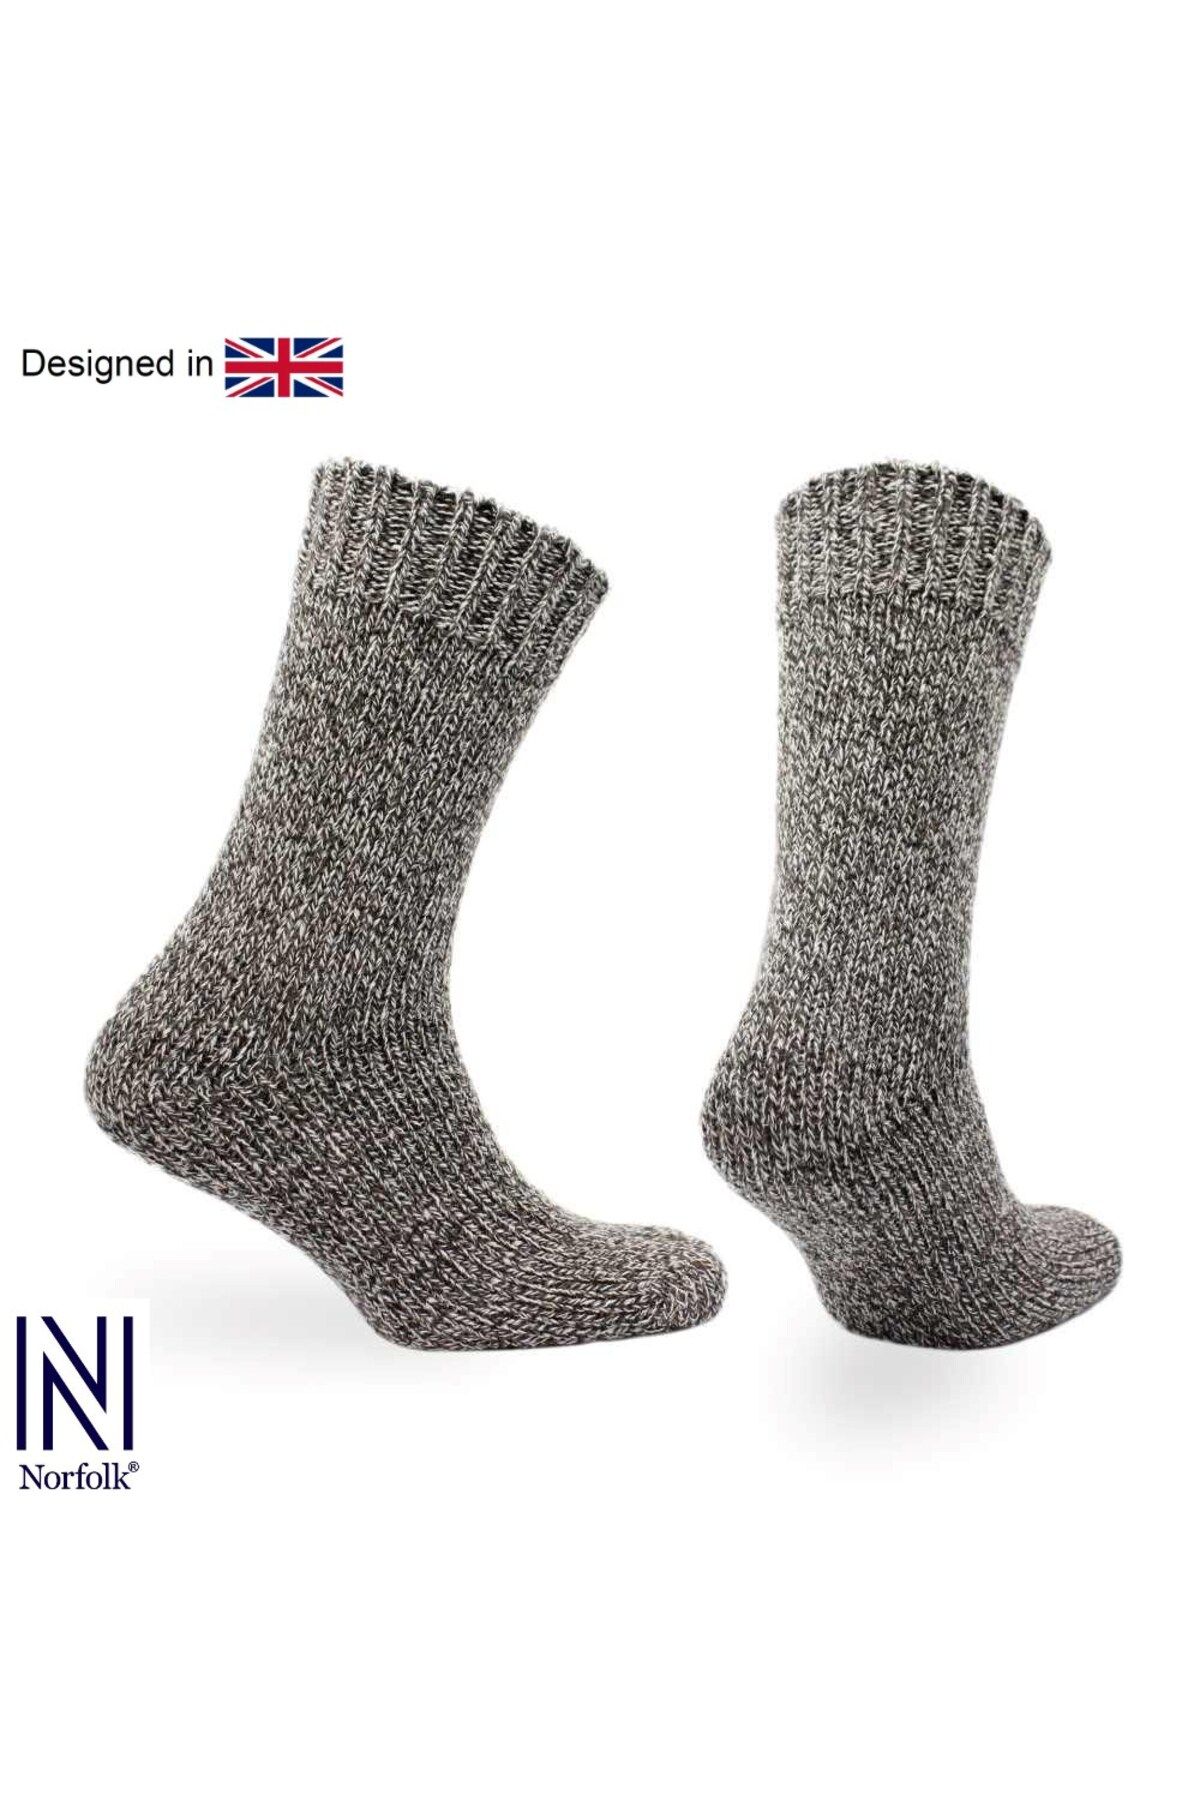 Norfolk Ragg Yün Kışlık Kalın Çorap 3'lü Paket